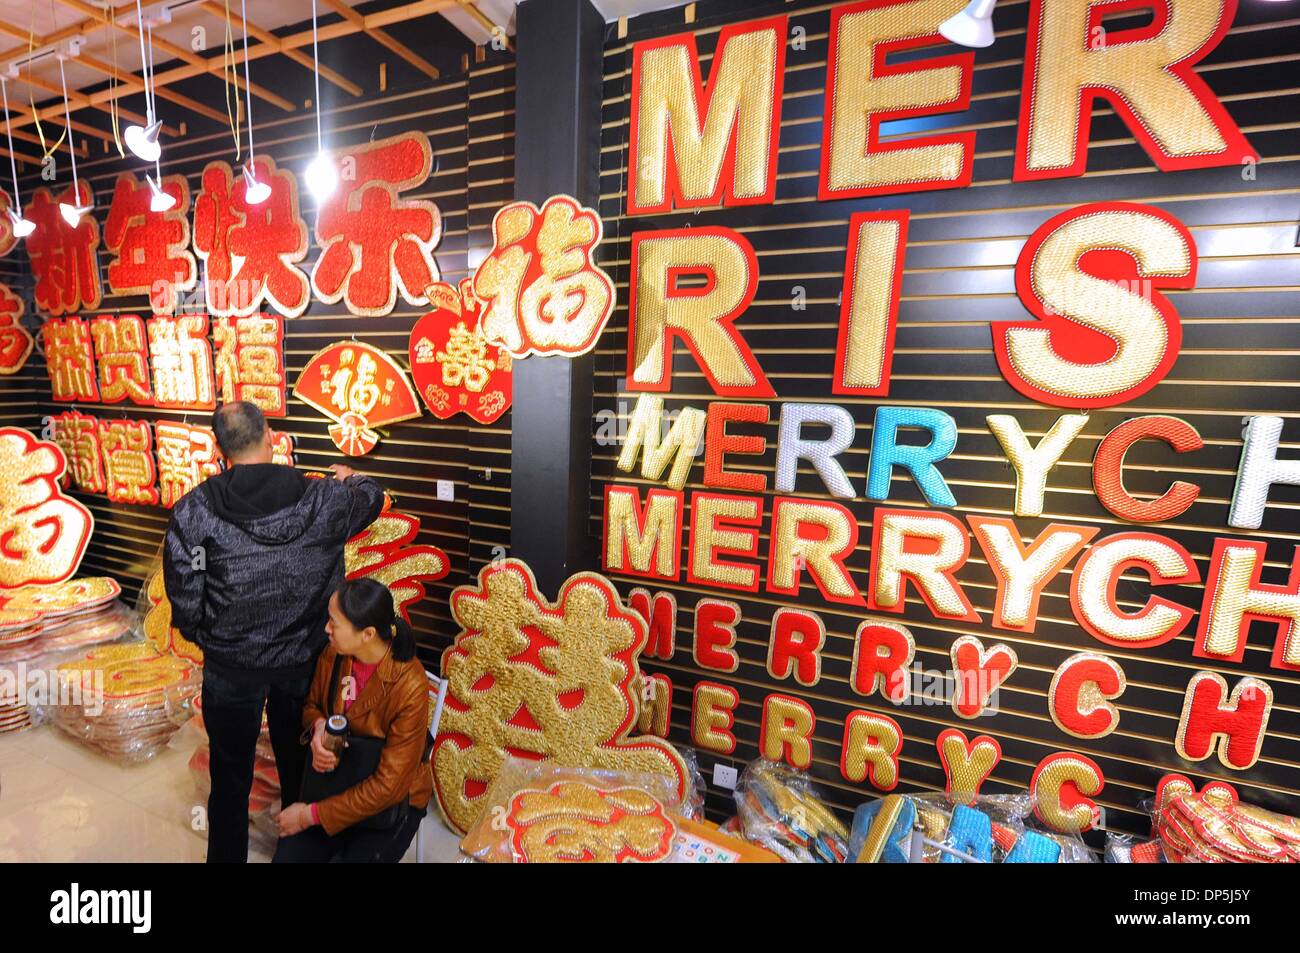 Hangzhou, cinese della Provincia di Zhejiang. 8 Gen, 2014. Gli acquirenti selezionare Nuovo Anno decorazioni al China Commodity City in Yiwu, una città rinomata per il suo piccolo commercio di prodotti in Cina orientale della provincia di Zhejiang, nov. 3, 2013. I prodotti di base la città mercato del fatturato, i cui vertici i mercati specializzati in tutto il paese per 23 anni, ha raggiunto 68,3 miliardi di yuan (11,28 miliardi di dollari) nel 2013, fino 17.76 per cento anno su anno, secondo le statistiche più recenti. © Tan Jin/Xinhua/Alamy Live News Foto Stock